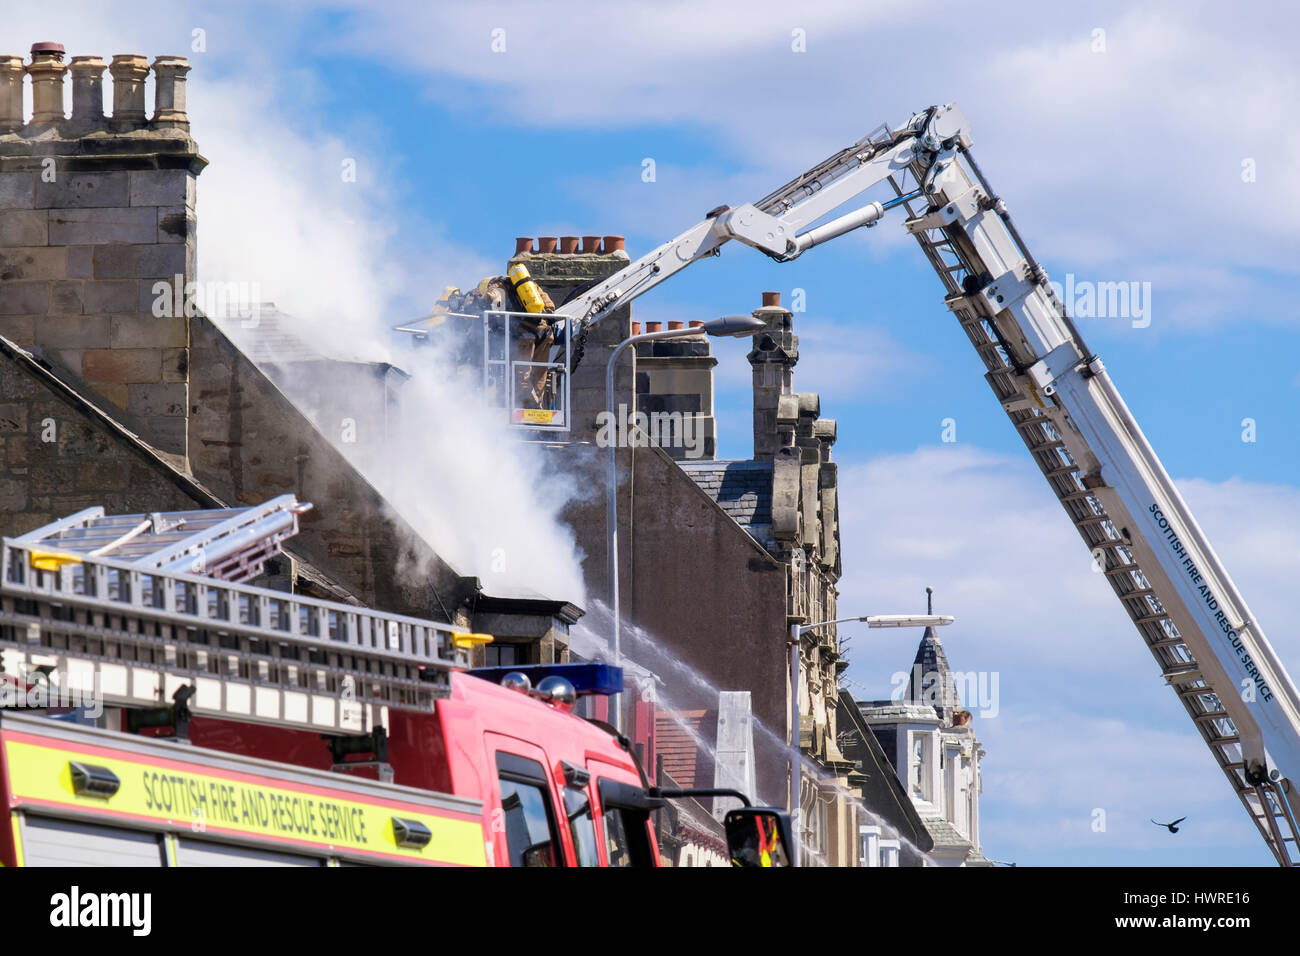 Schottische Feuerwehr Feuerwehr oben eine Leiter, die Bekämpfung von einem brennenden Gebäude. Elie und Earlsferry, Fife, Schottland, Großbritannien, Großbritannien, Europa Stockfoto